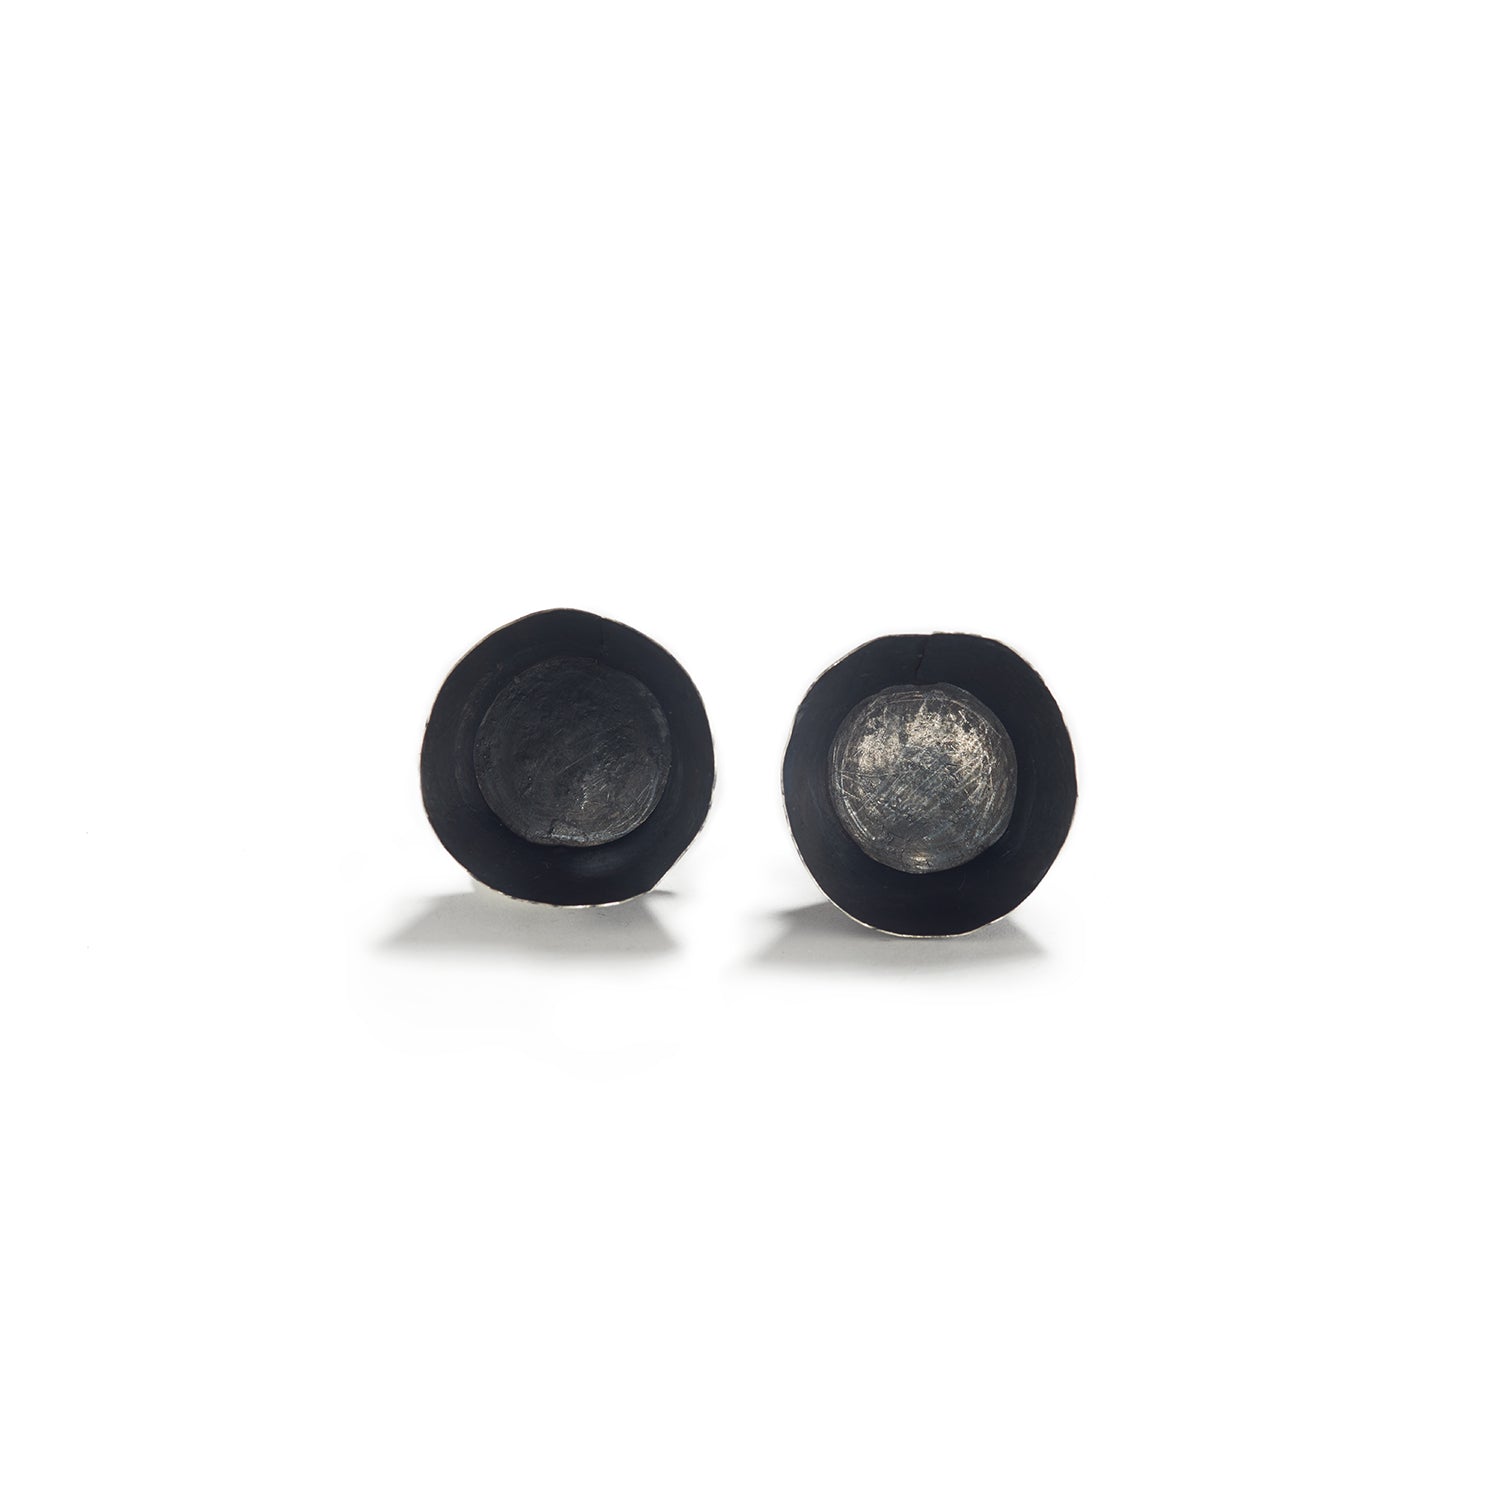 Oxidized Sterling Silver Bowl Earrings